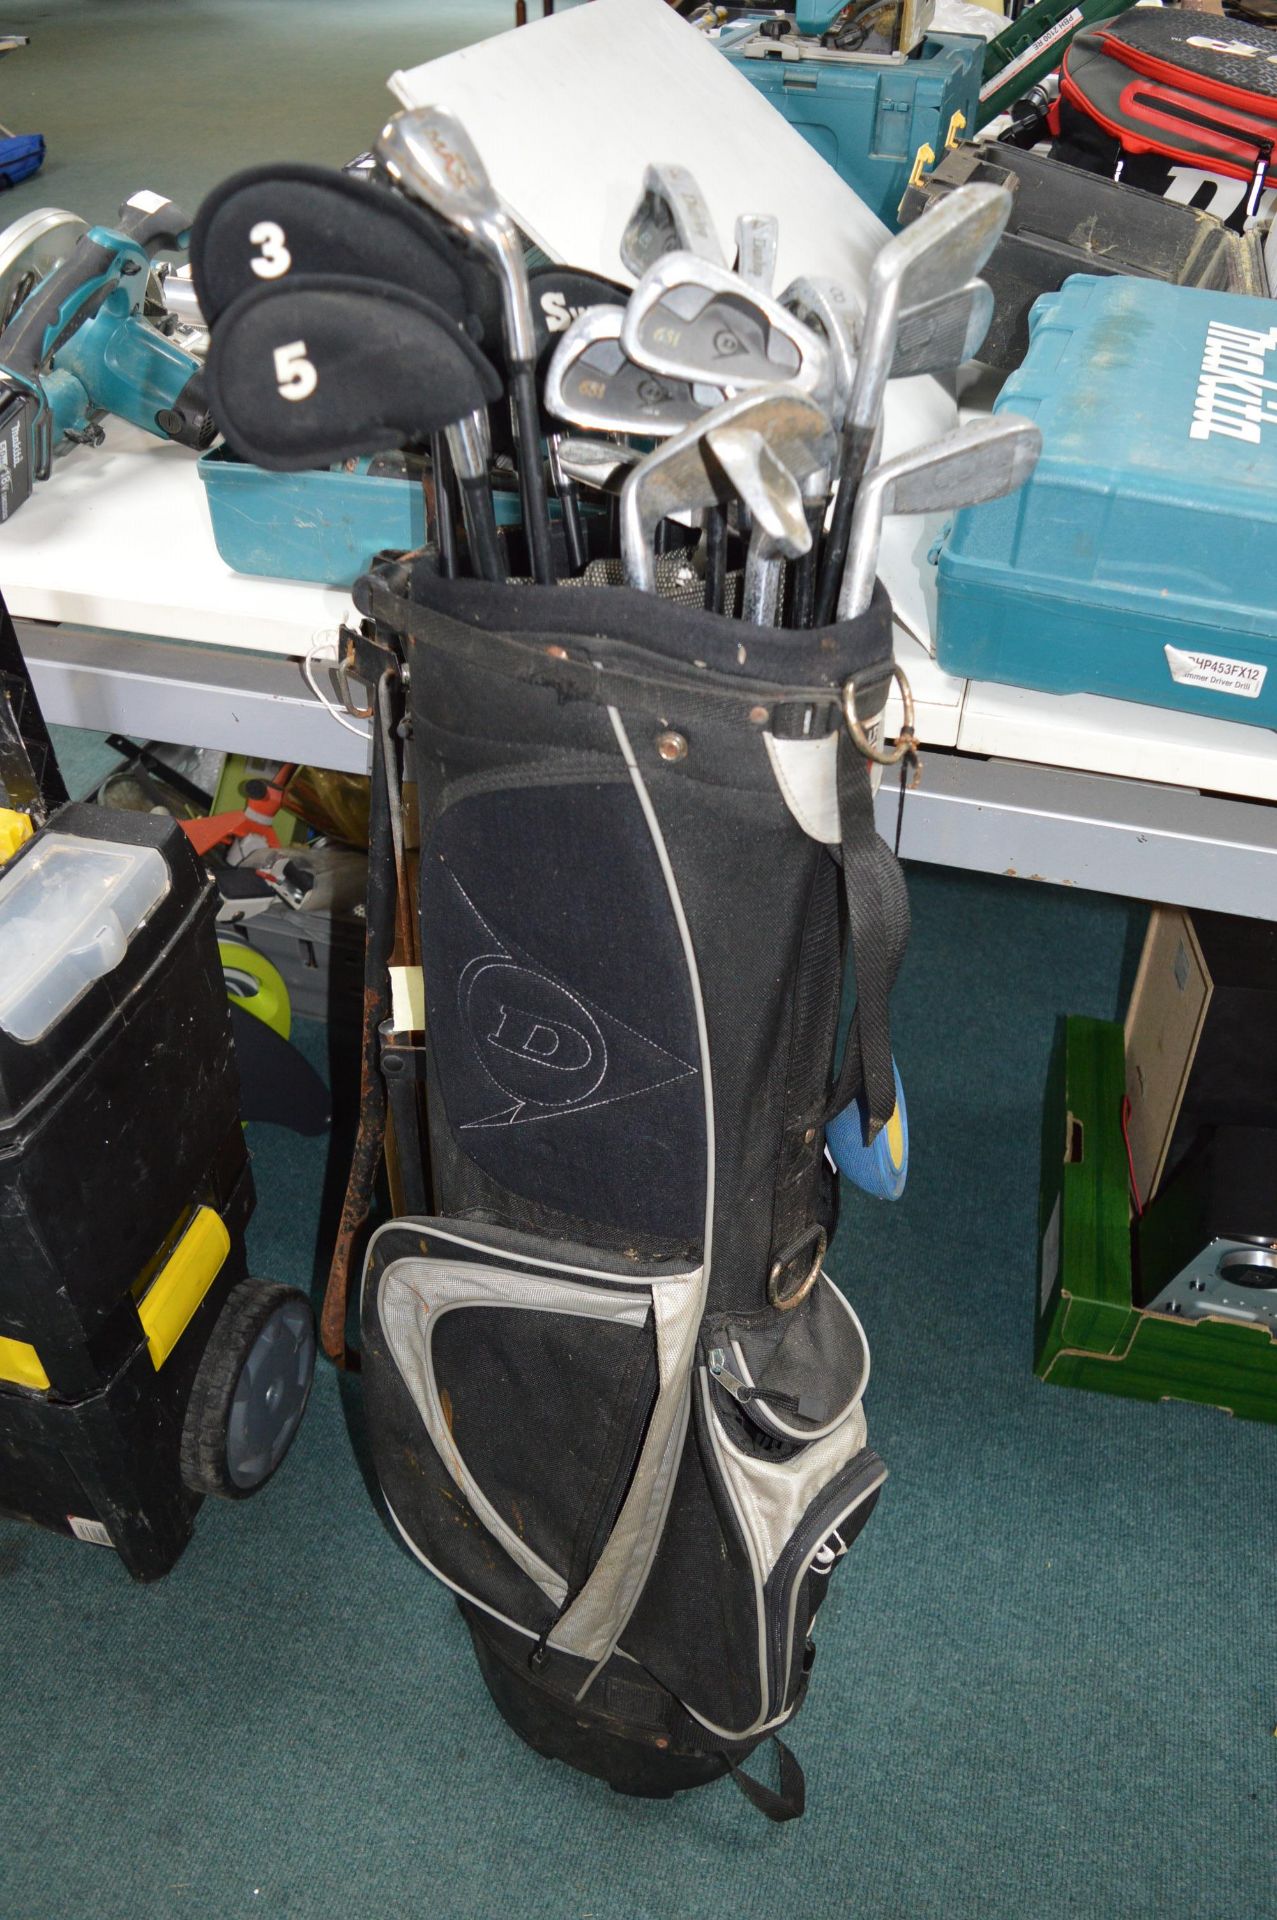 Dunlop Golf Bag and Assorted Golf Clubs